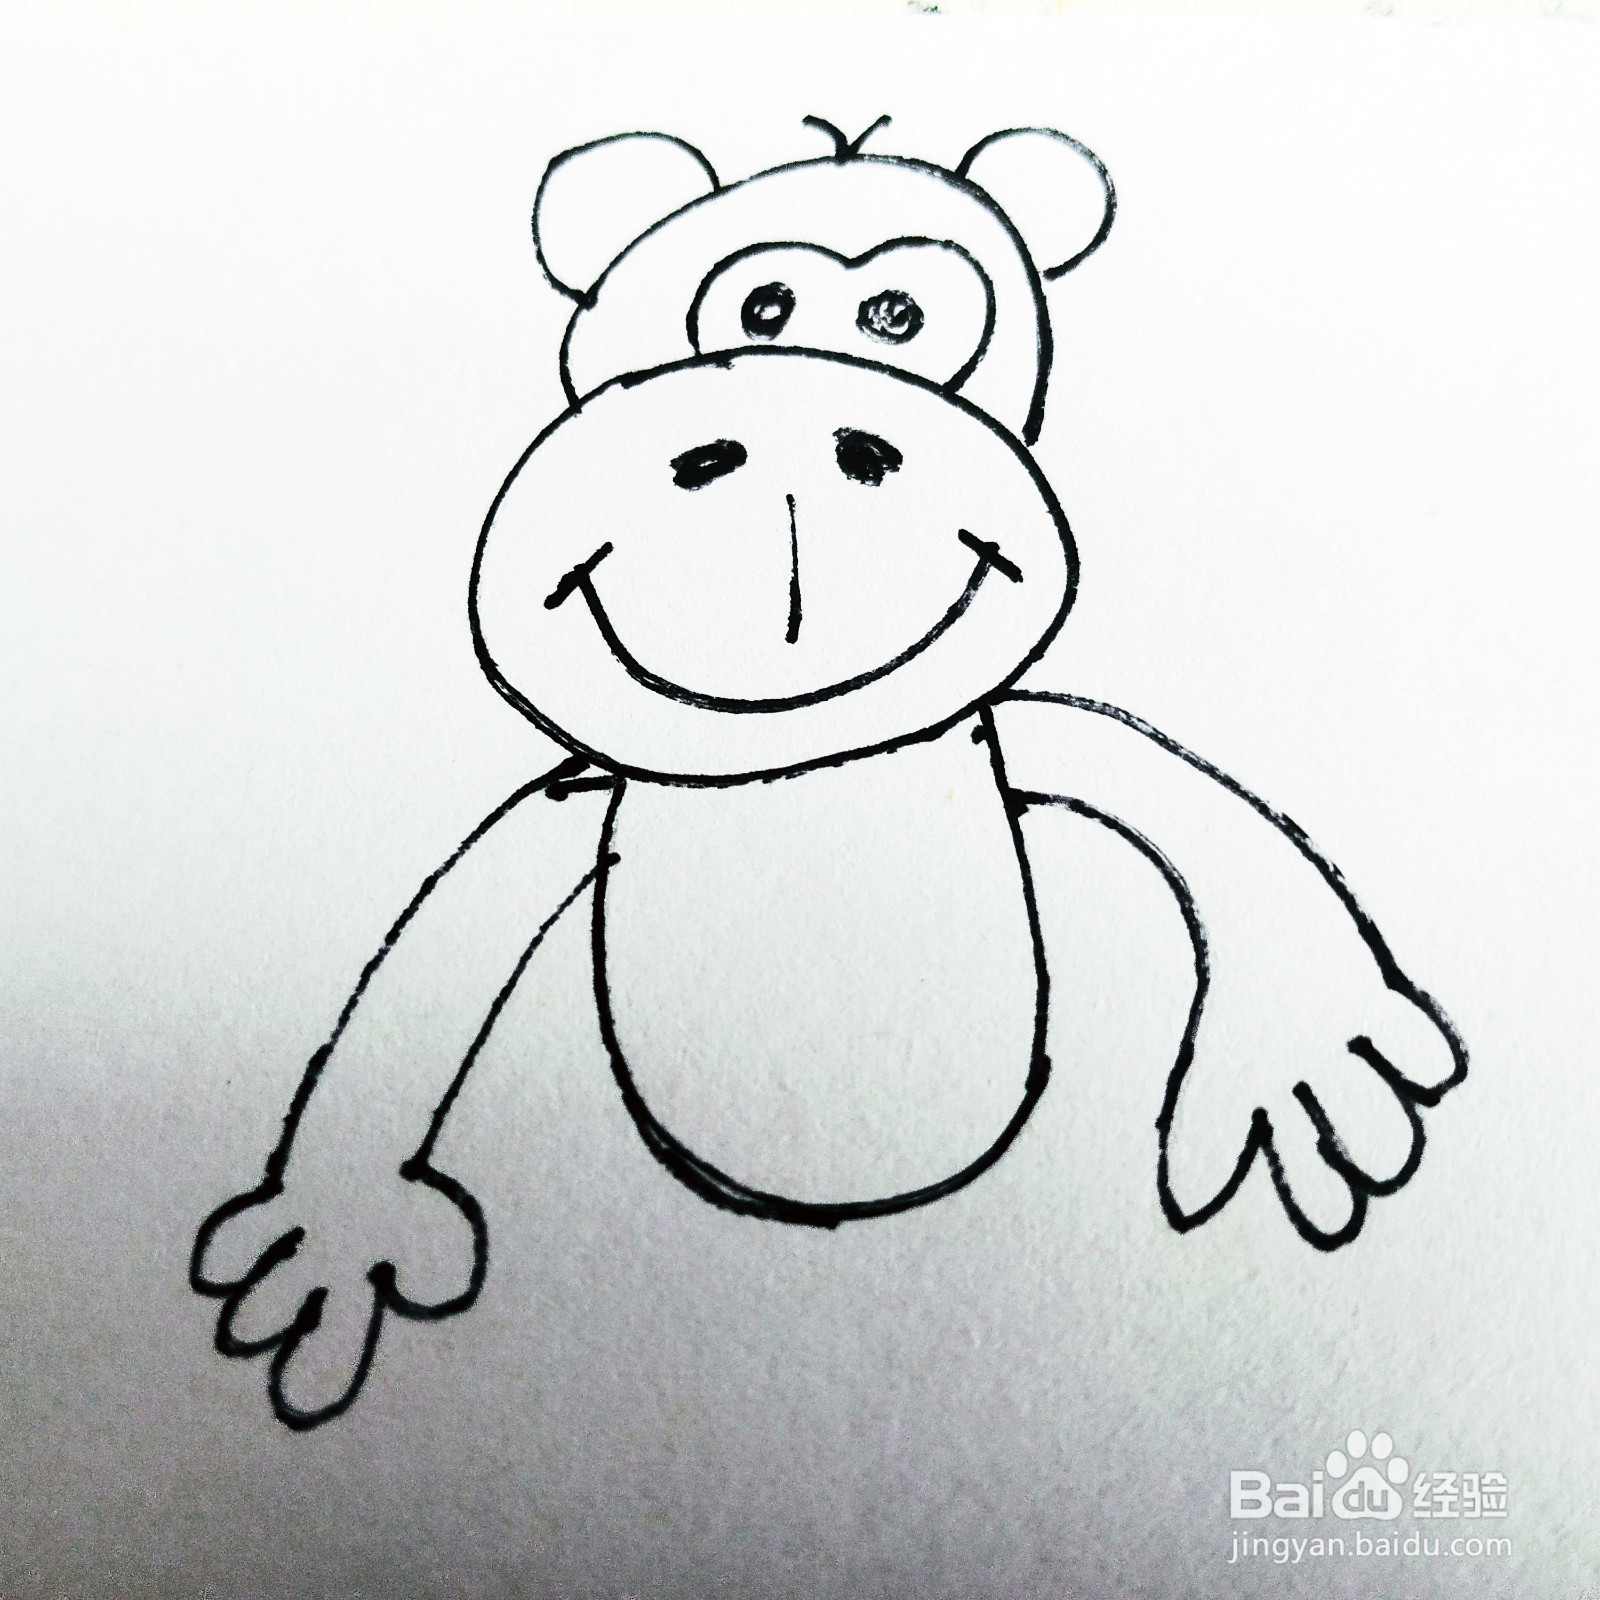 如何来画一只卡通大嘴猴子简笔画呢?